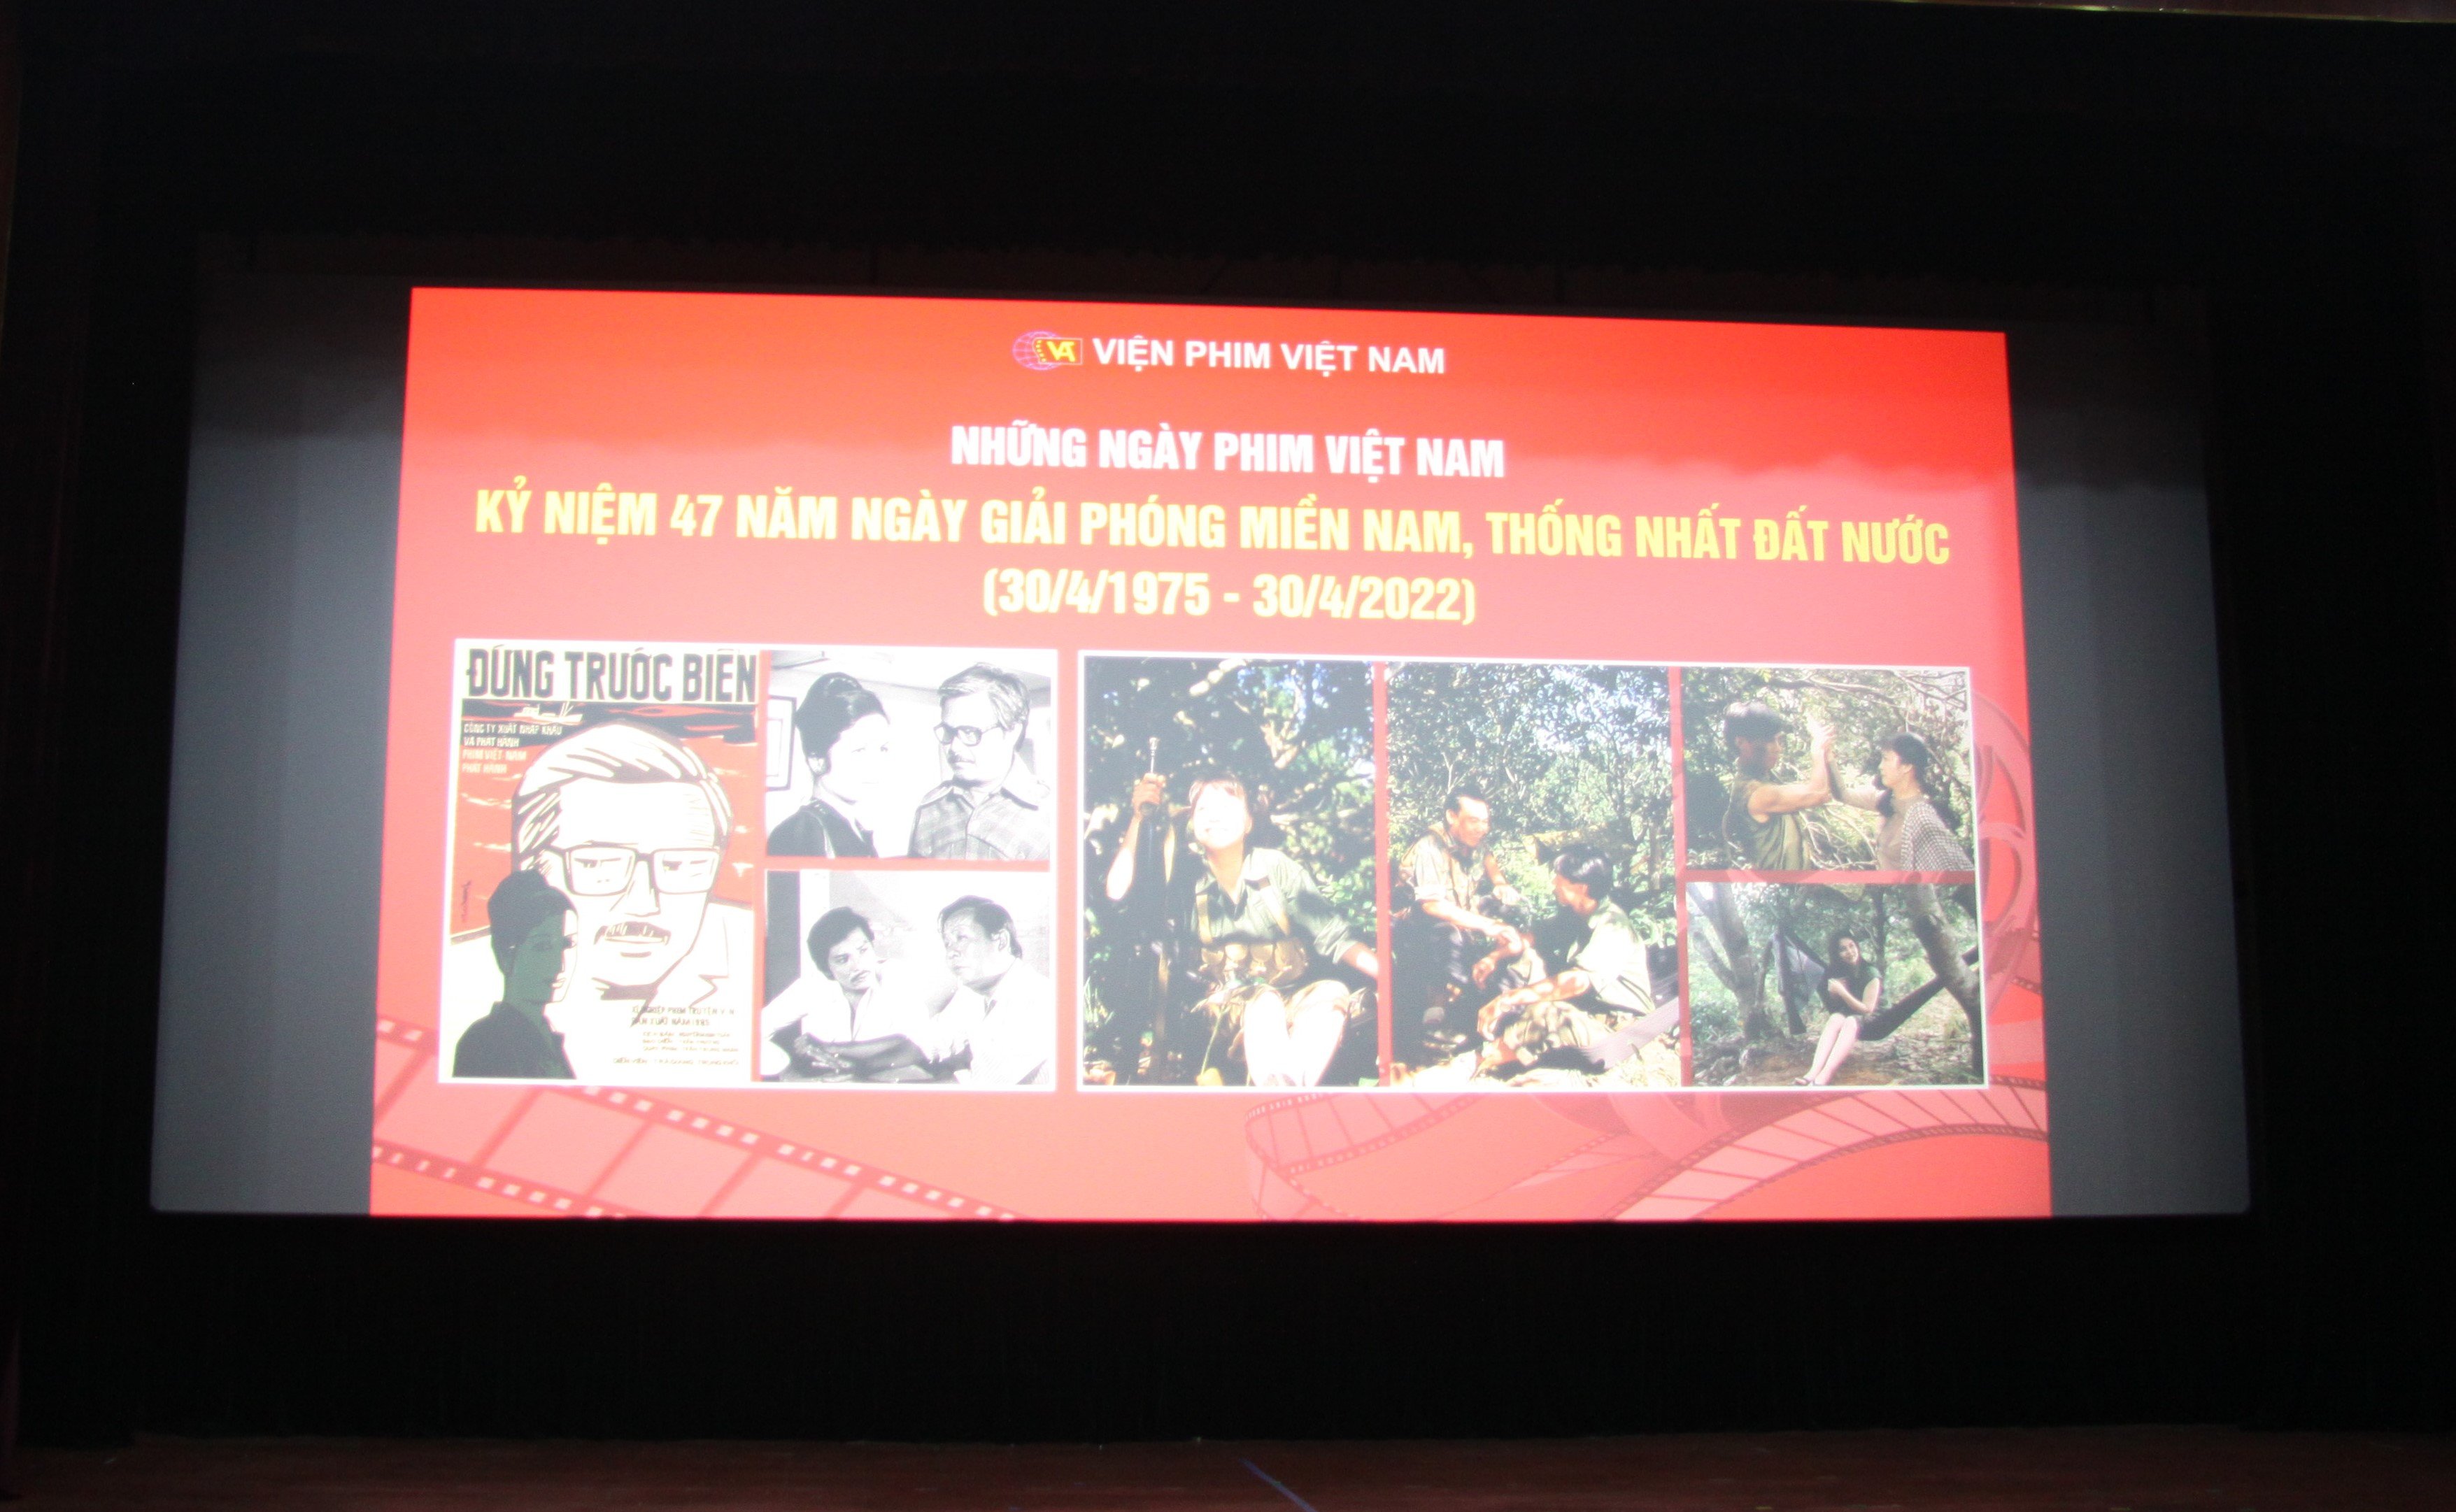 Giới thiệu phim mới: "Hồ Chí Minh - Hành trình kiến tạo Văn hóa hòa bình" do Viện Phim Việt Nam sản xuất (Kỷ niệm 132 năm Ngày sinh nhật Bác)